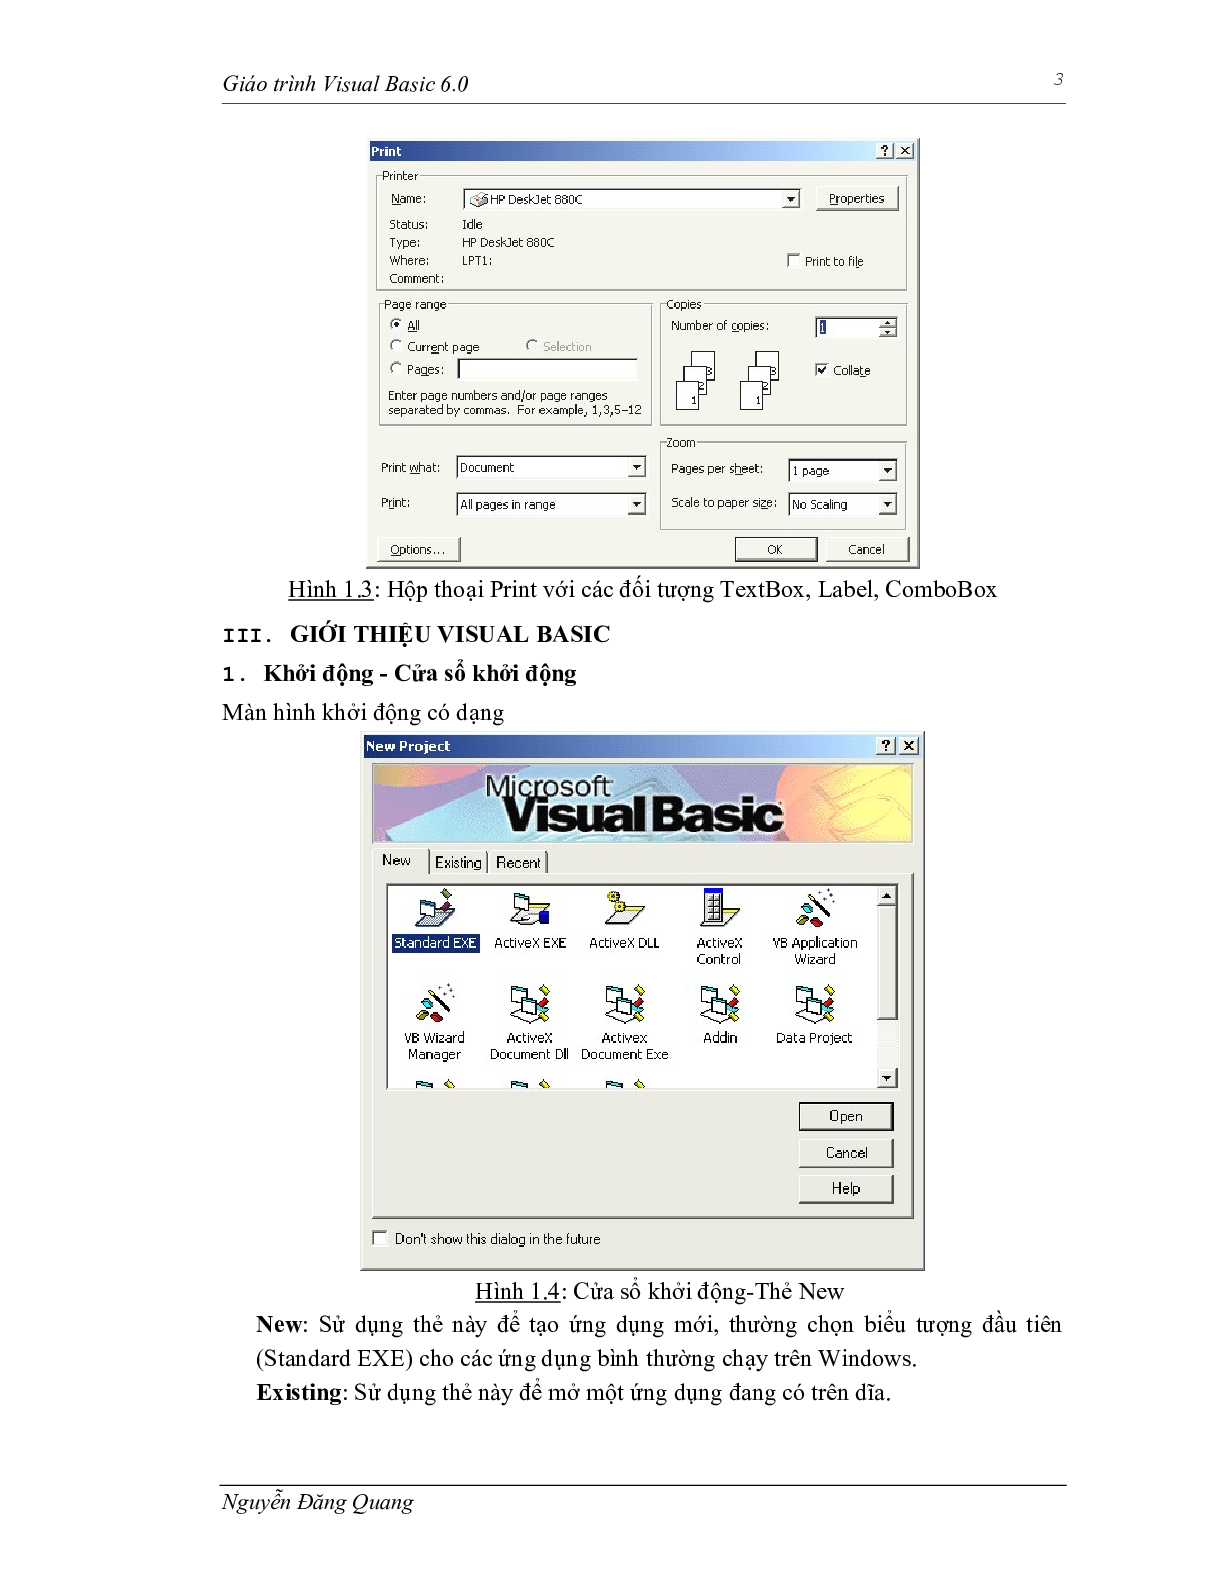 Giáo trình Visual basic 6.0 | Trường Đại học Sư phạm Kỹ thuật Thành phố Hồ Chí Minh (trang 4)